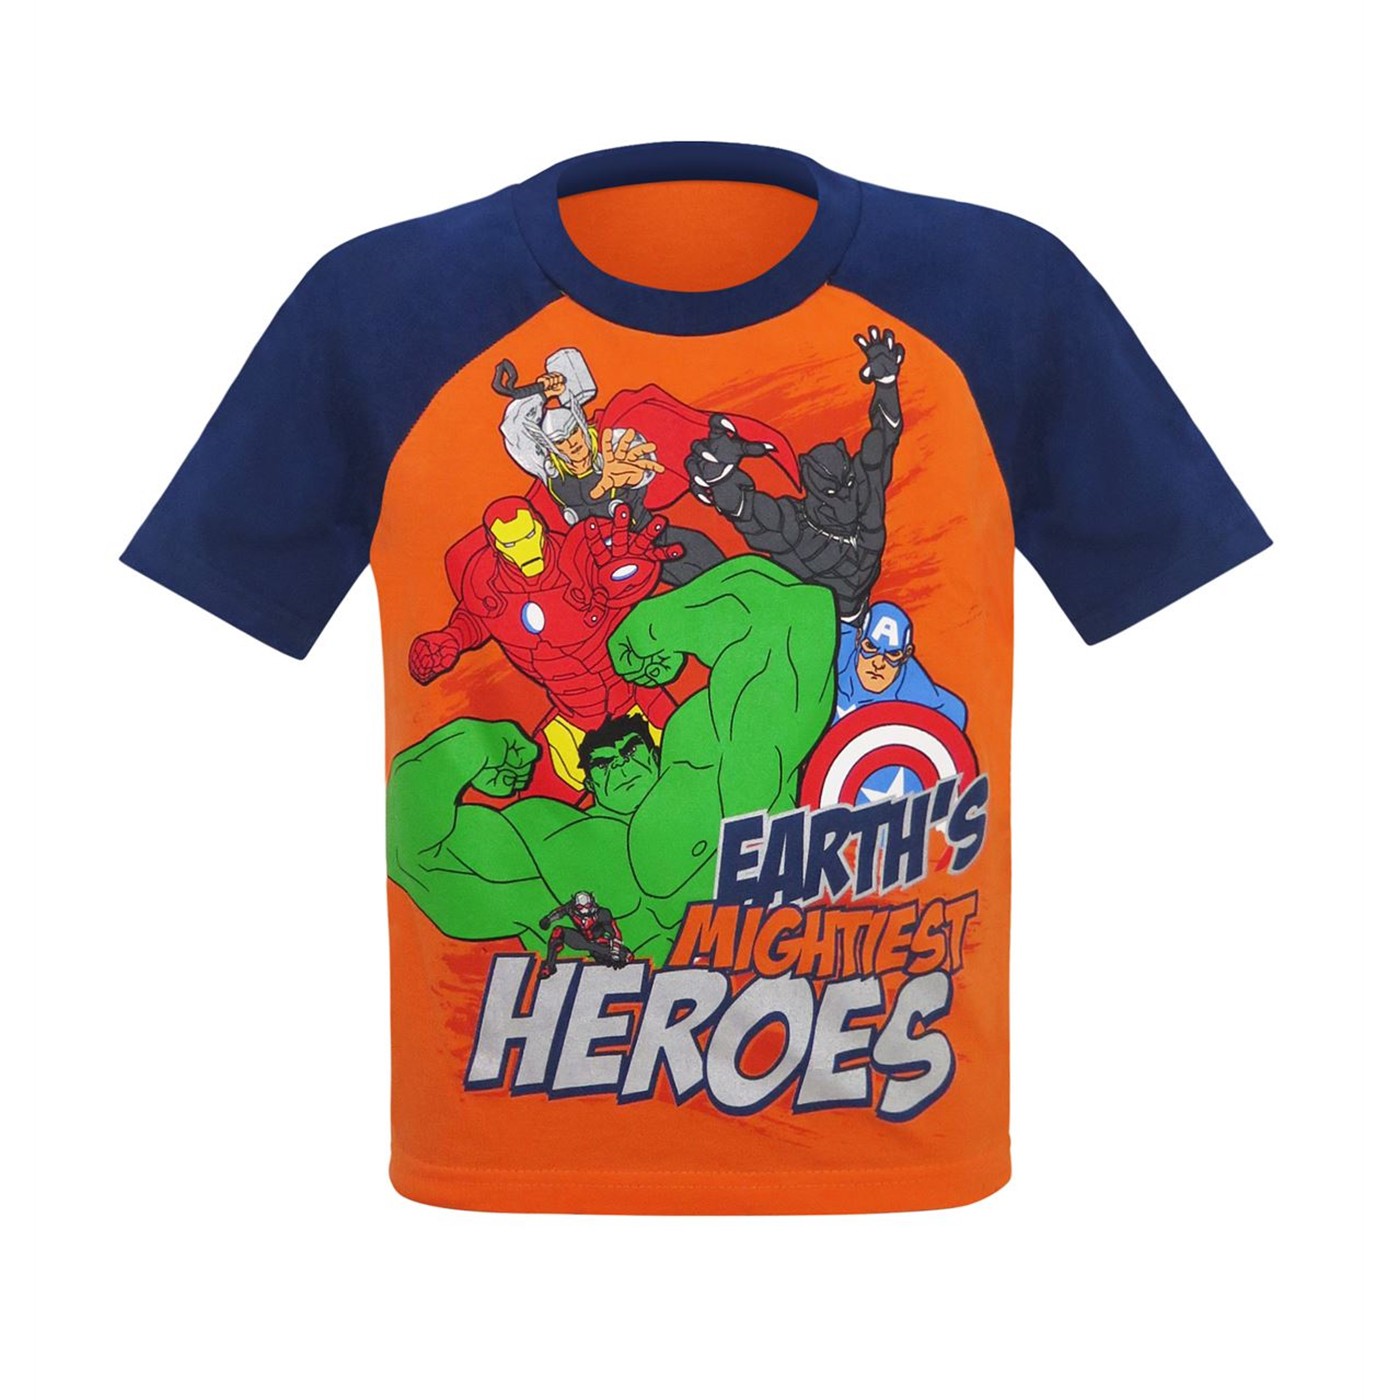 Avengers Heroes Kids T-Shirt & Sweatpants Set